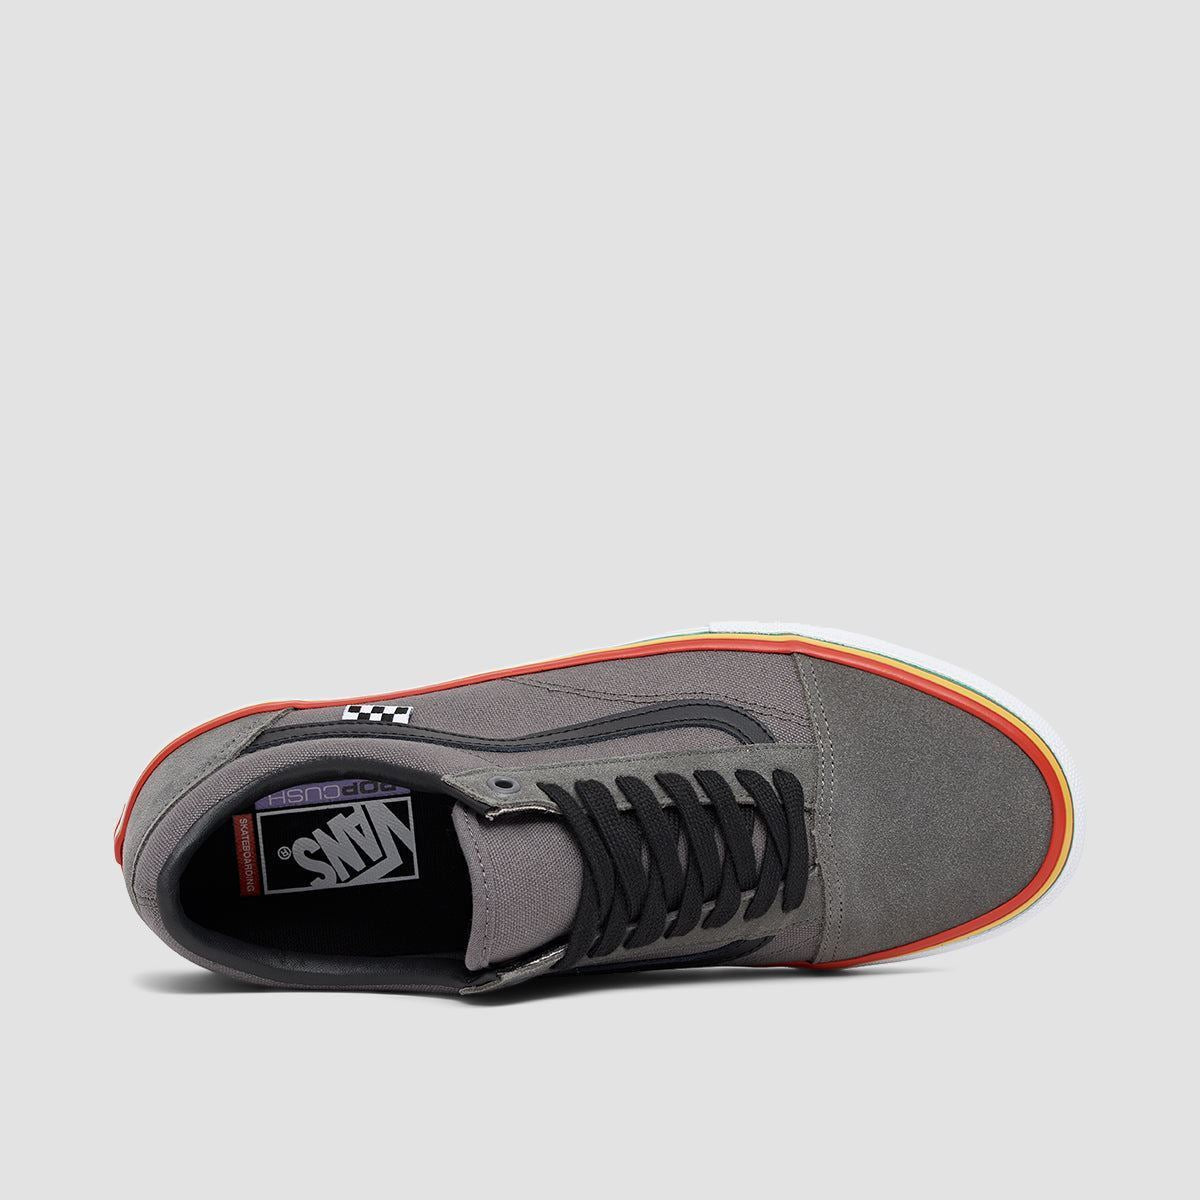 Vans Skate Old Skool Shoes - Rasta Grey